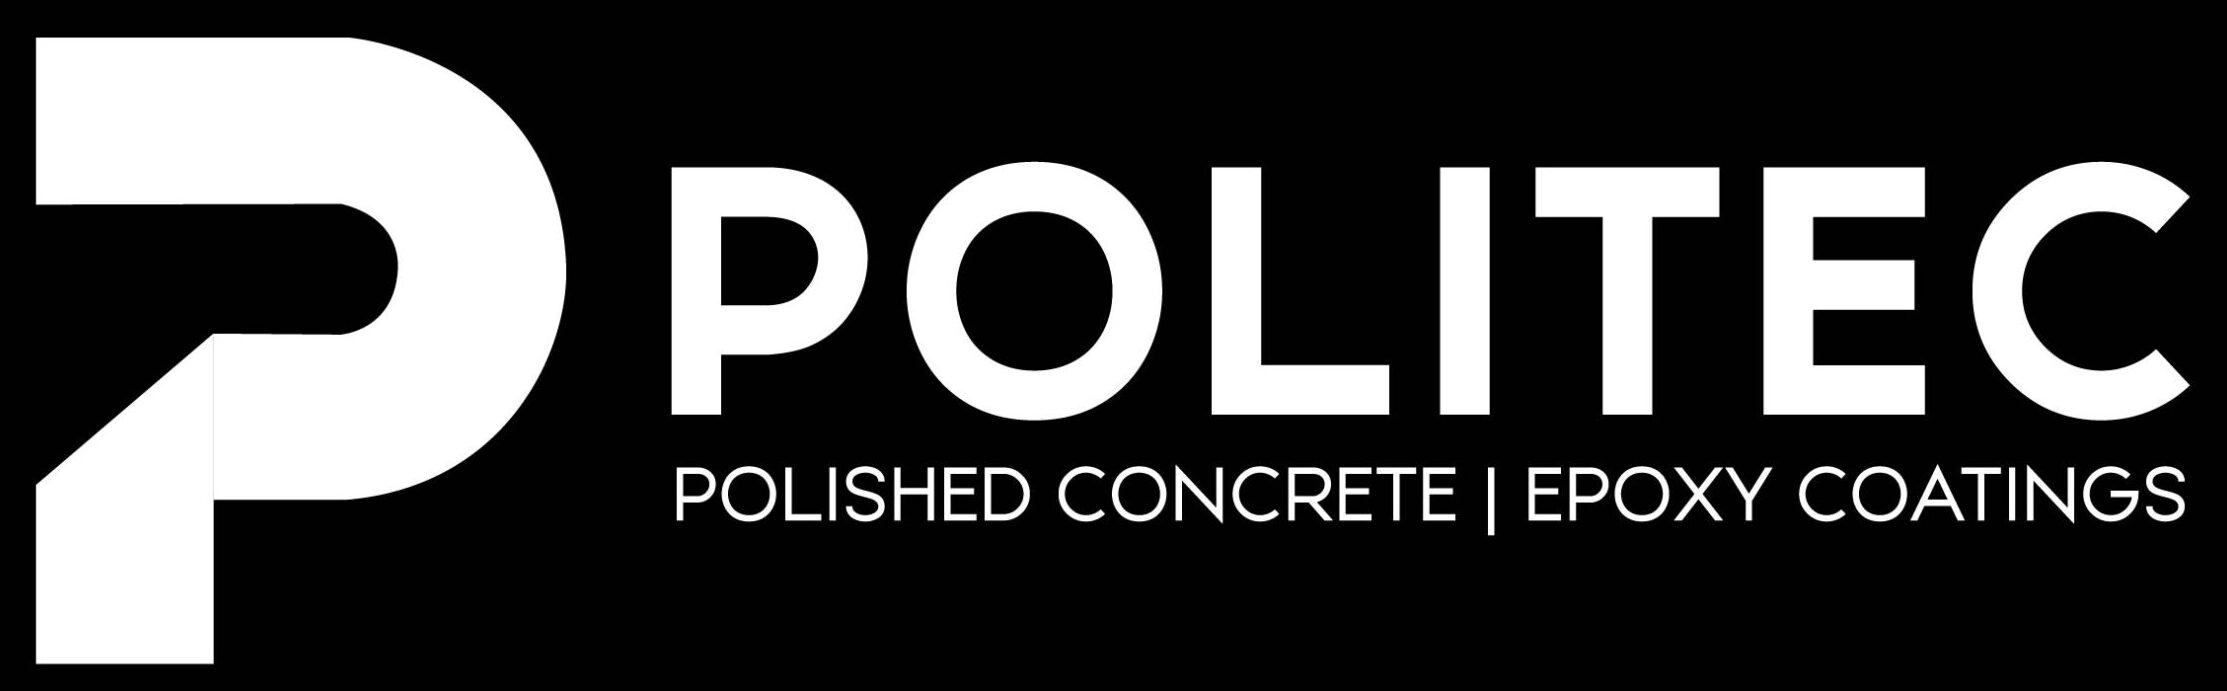 Politec - POLISHED CONCRETE | EPOXY COATINGS | FLOOR PREP